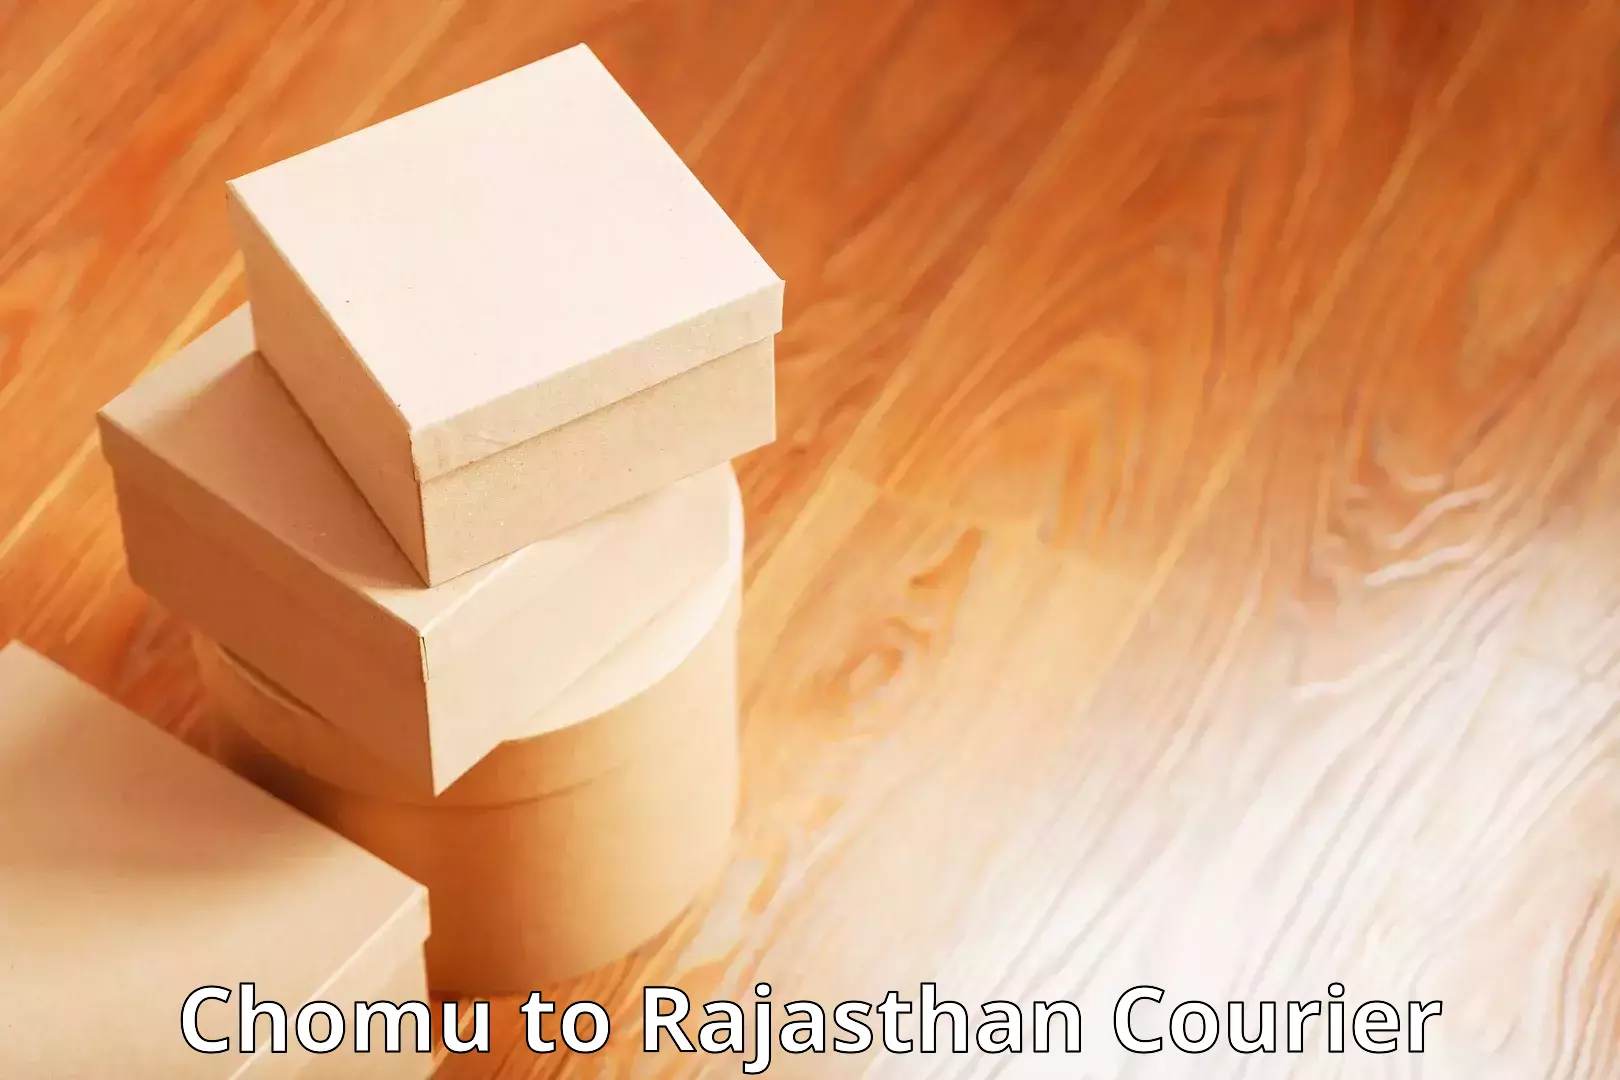 State-of-the-art courier technology Chomu to Bhawani Mandi